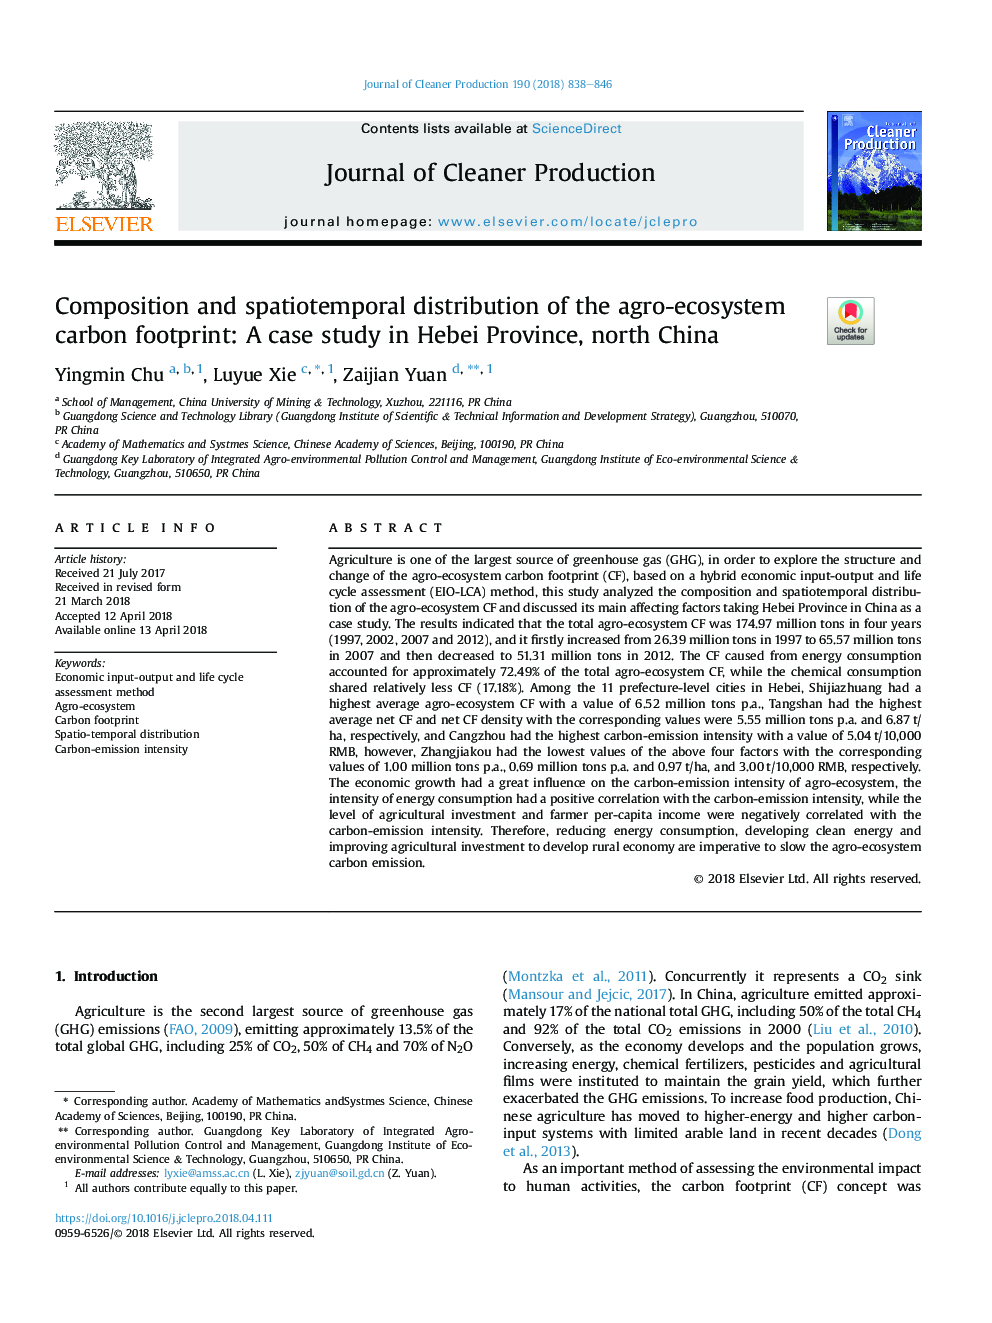 ترکیب و توزیع فضایی از منظر کربن کشاورزی و اکوسیستم: مطالعه موردی در استان هبی، شمال چین 